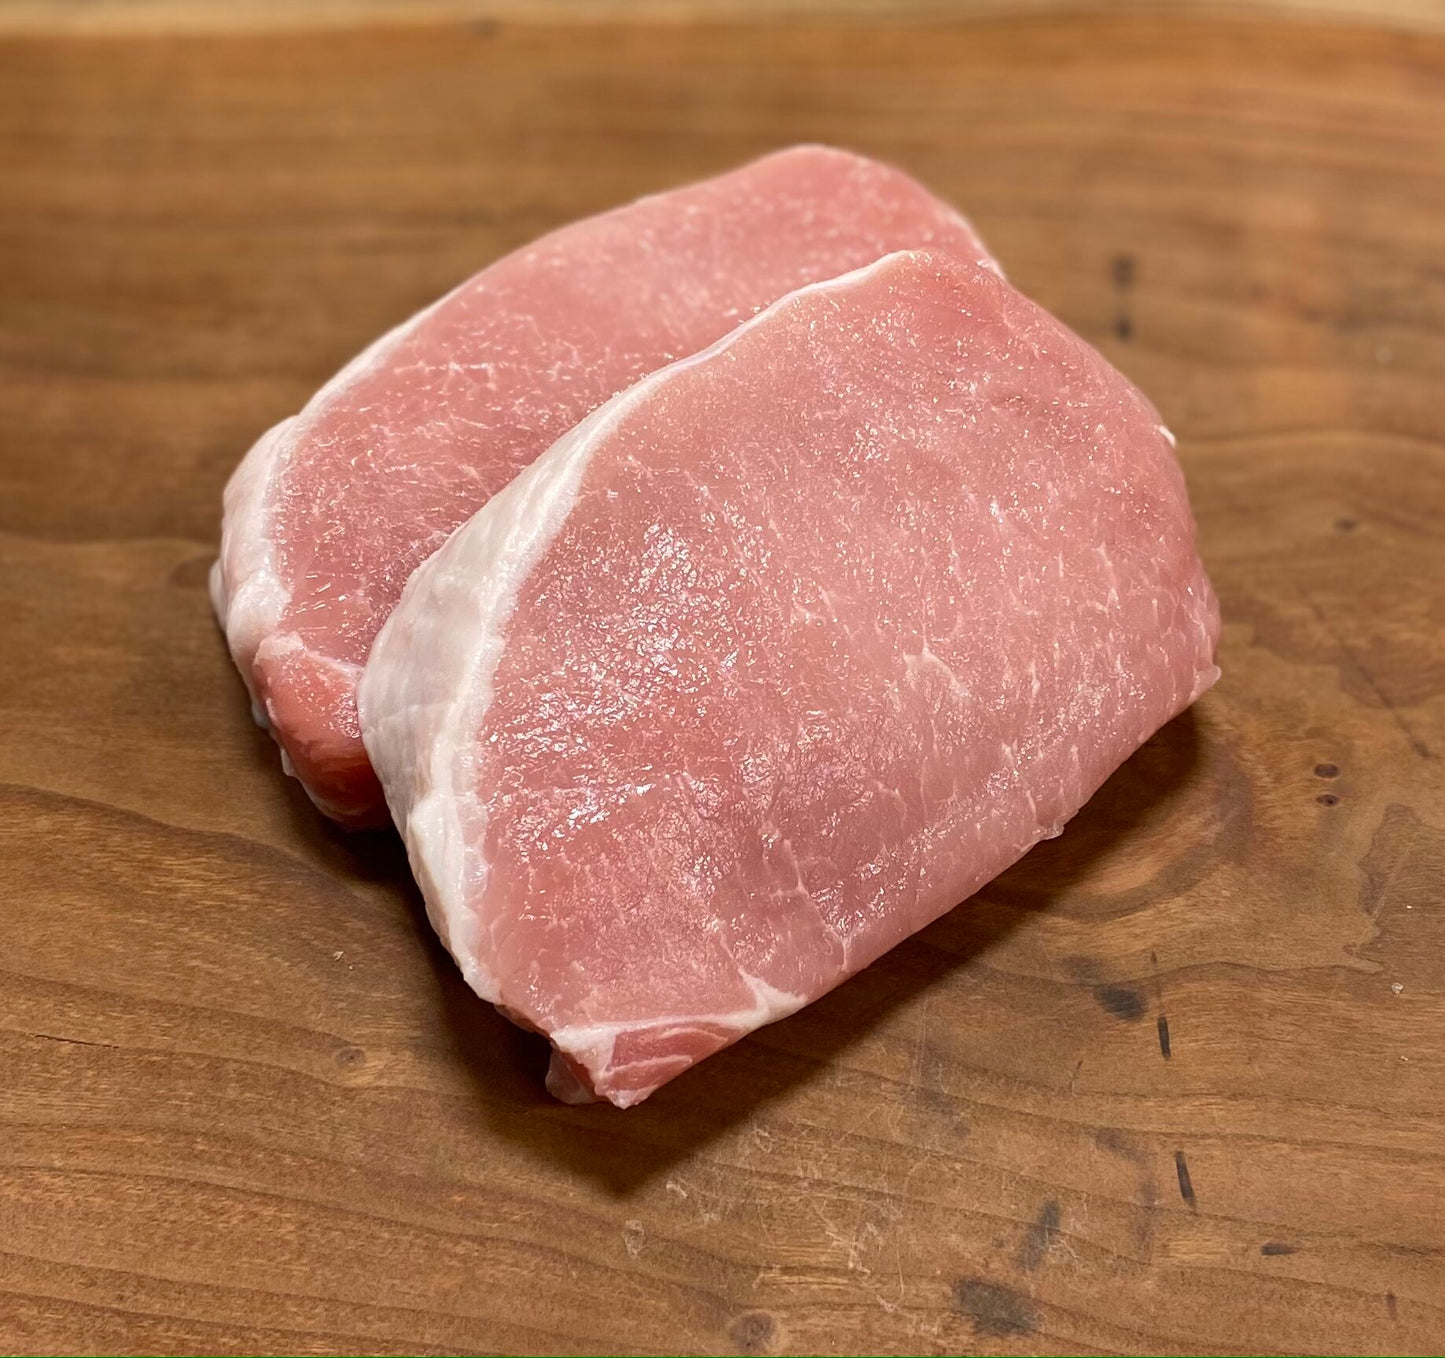 Boneless Center Cut Pork Chops